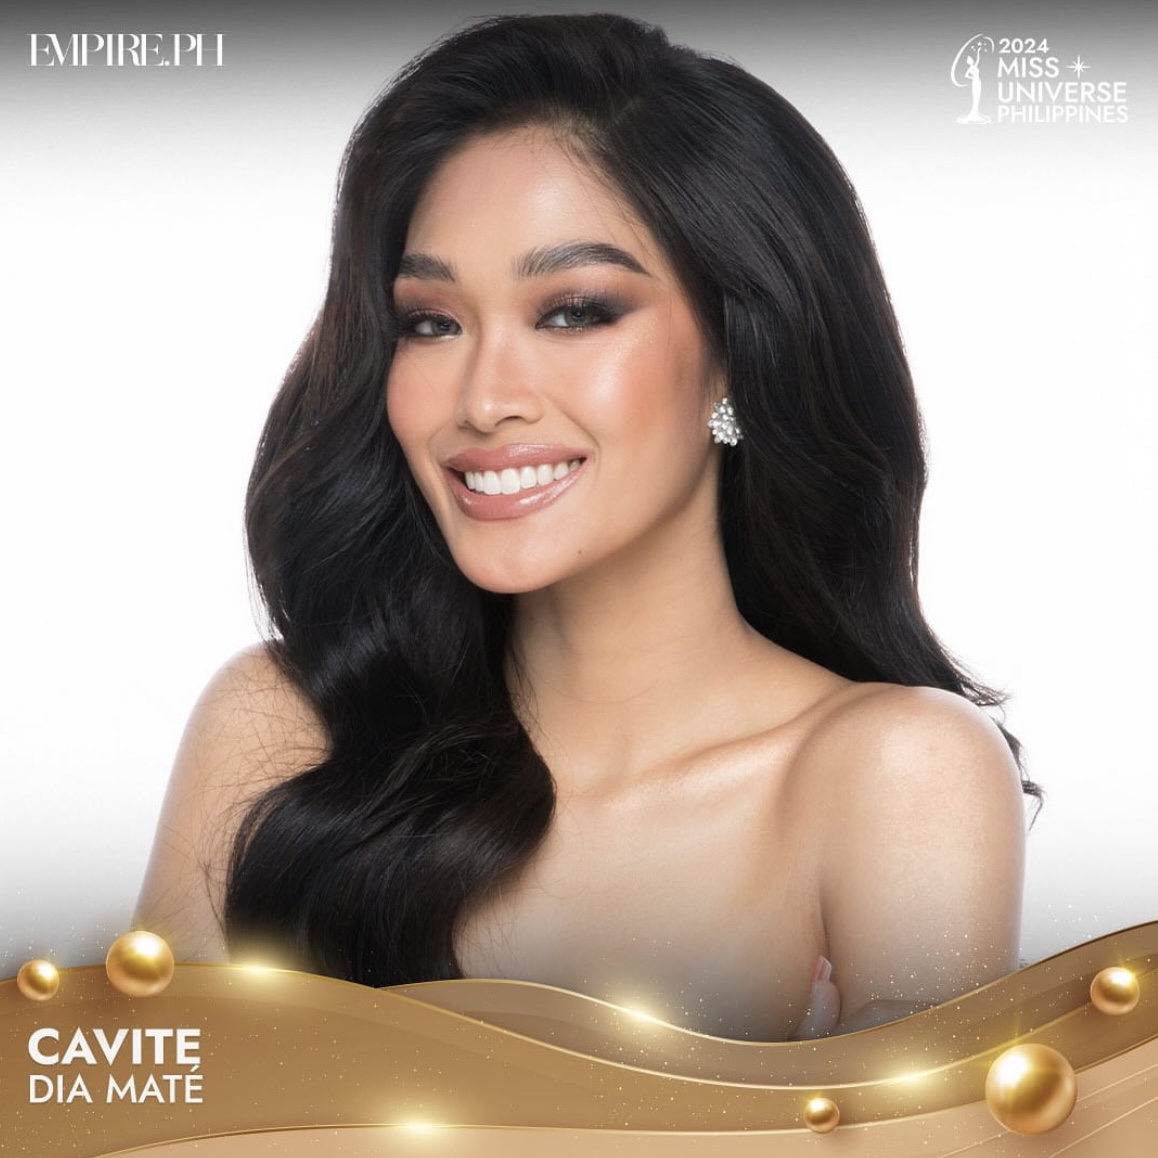 Miss Universe Philippines 2024 cavite dia mate